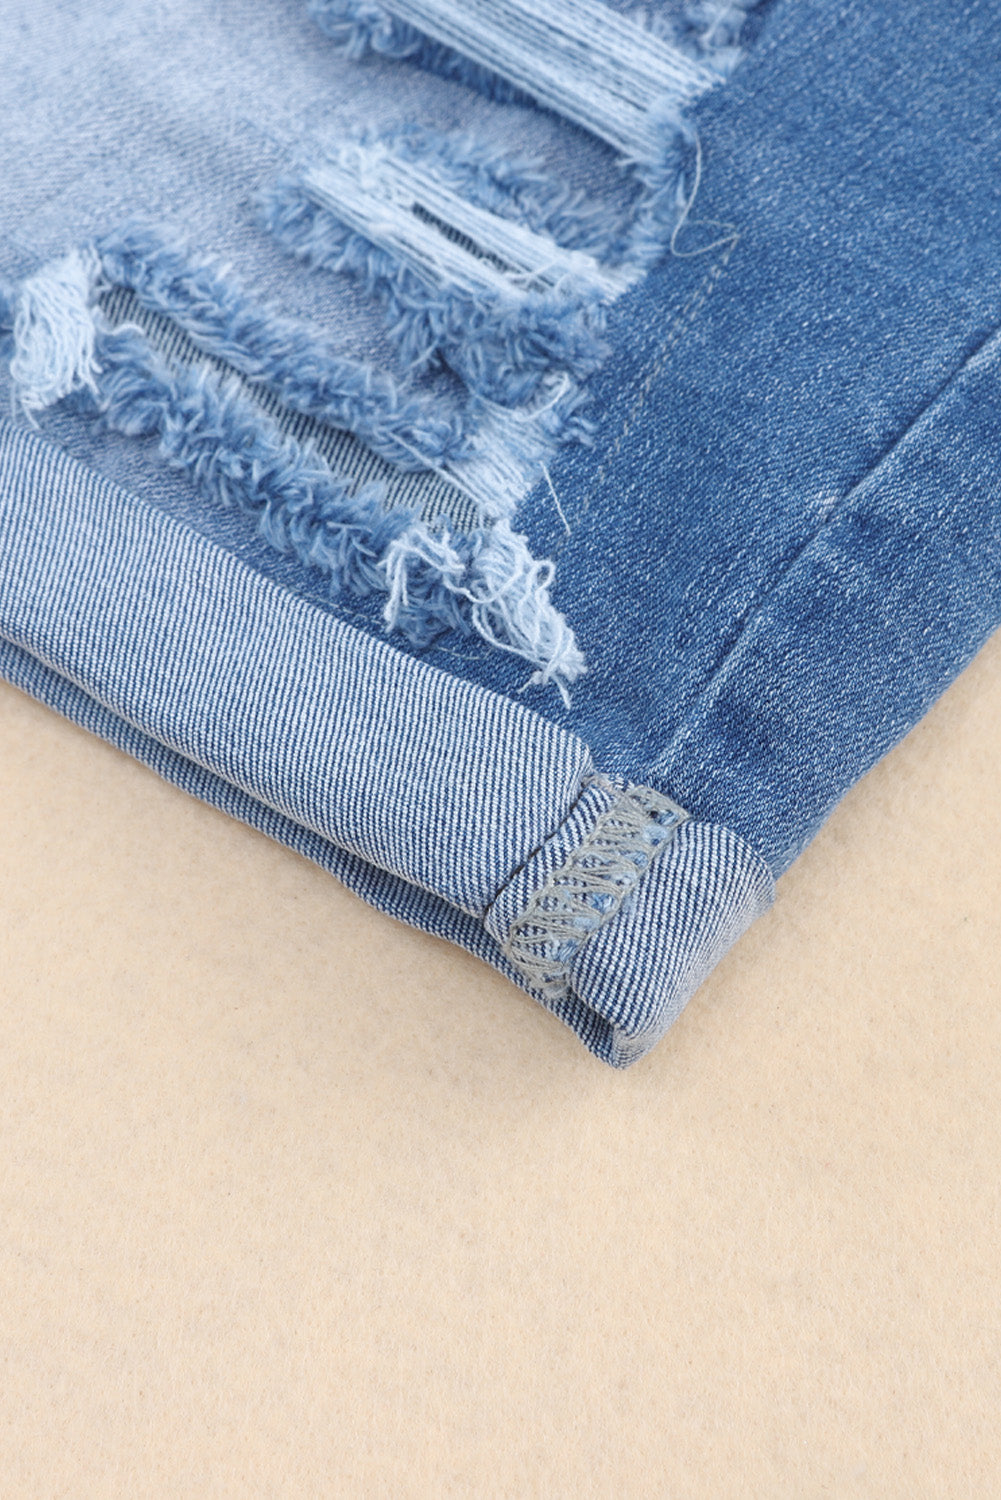 Pantaloncini di jeans con tasca a vita alta invecchiati vintage azzurro cielo